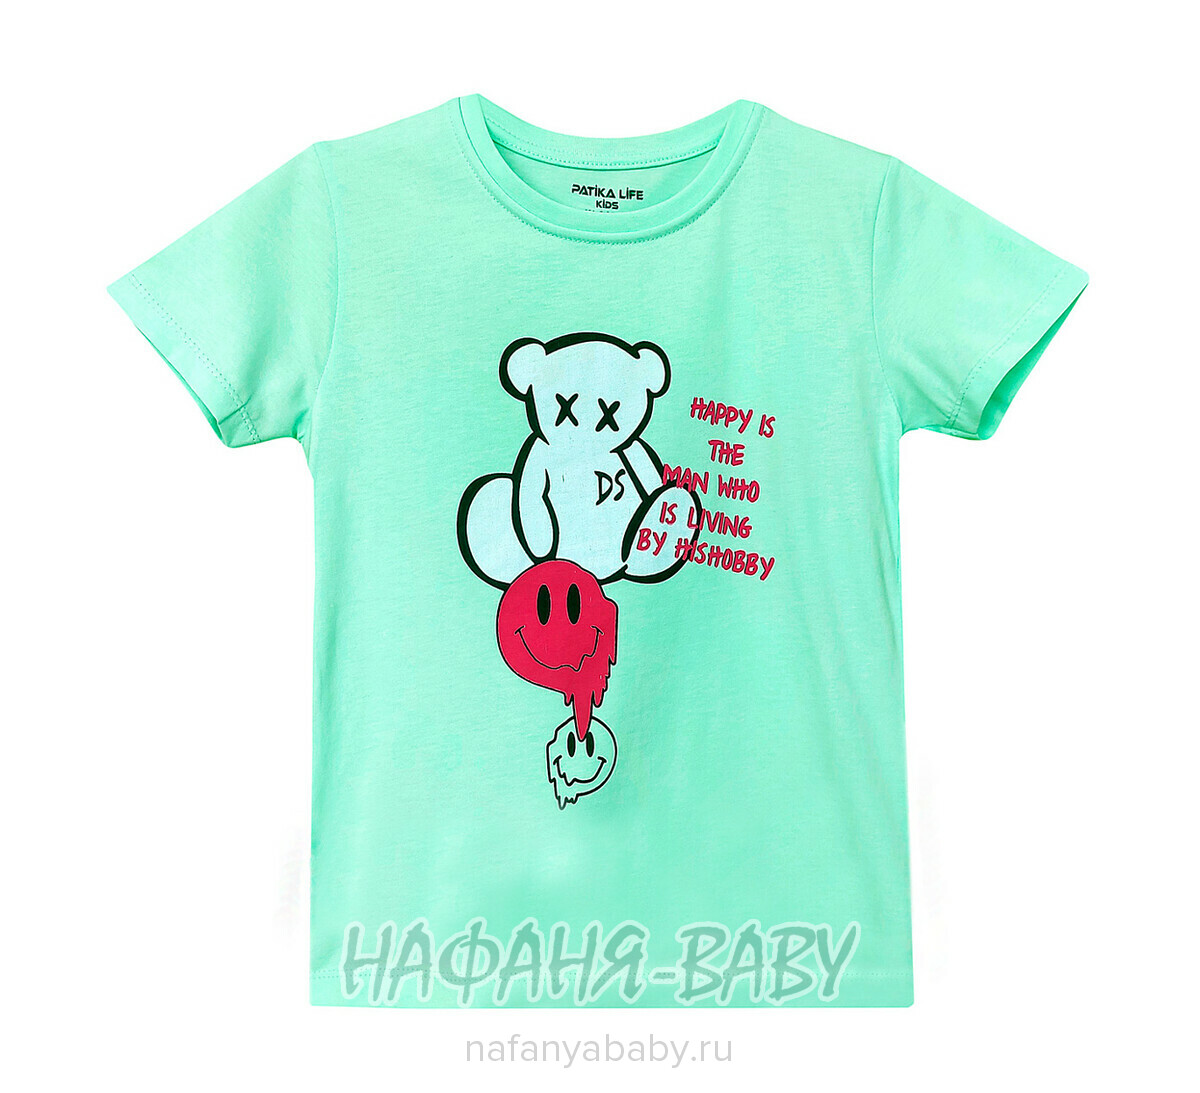 Подростковая футболка PATIKA арт. 6169, 9-12 лет, цвет аквамариновый, оптом Турция